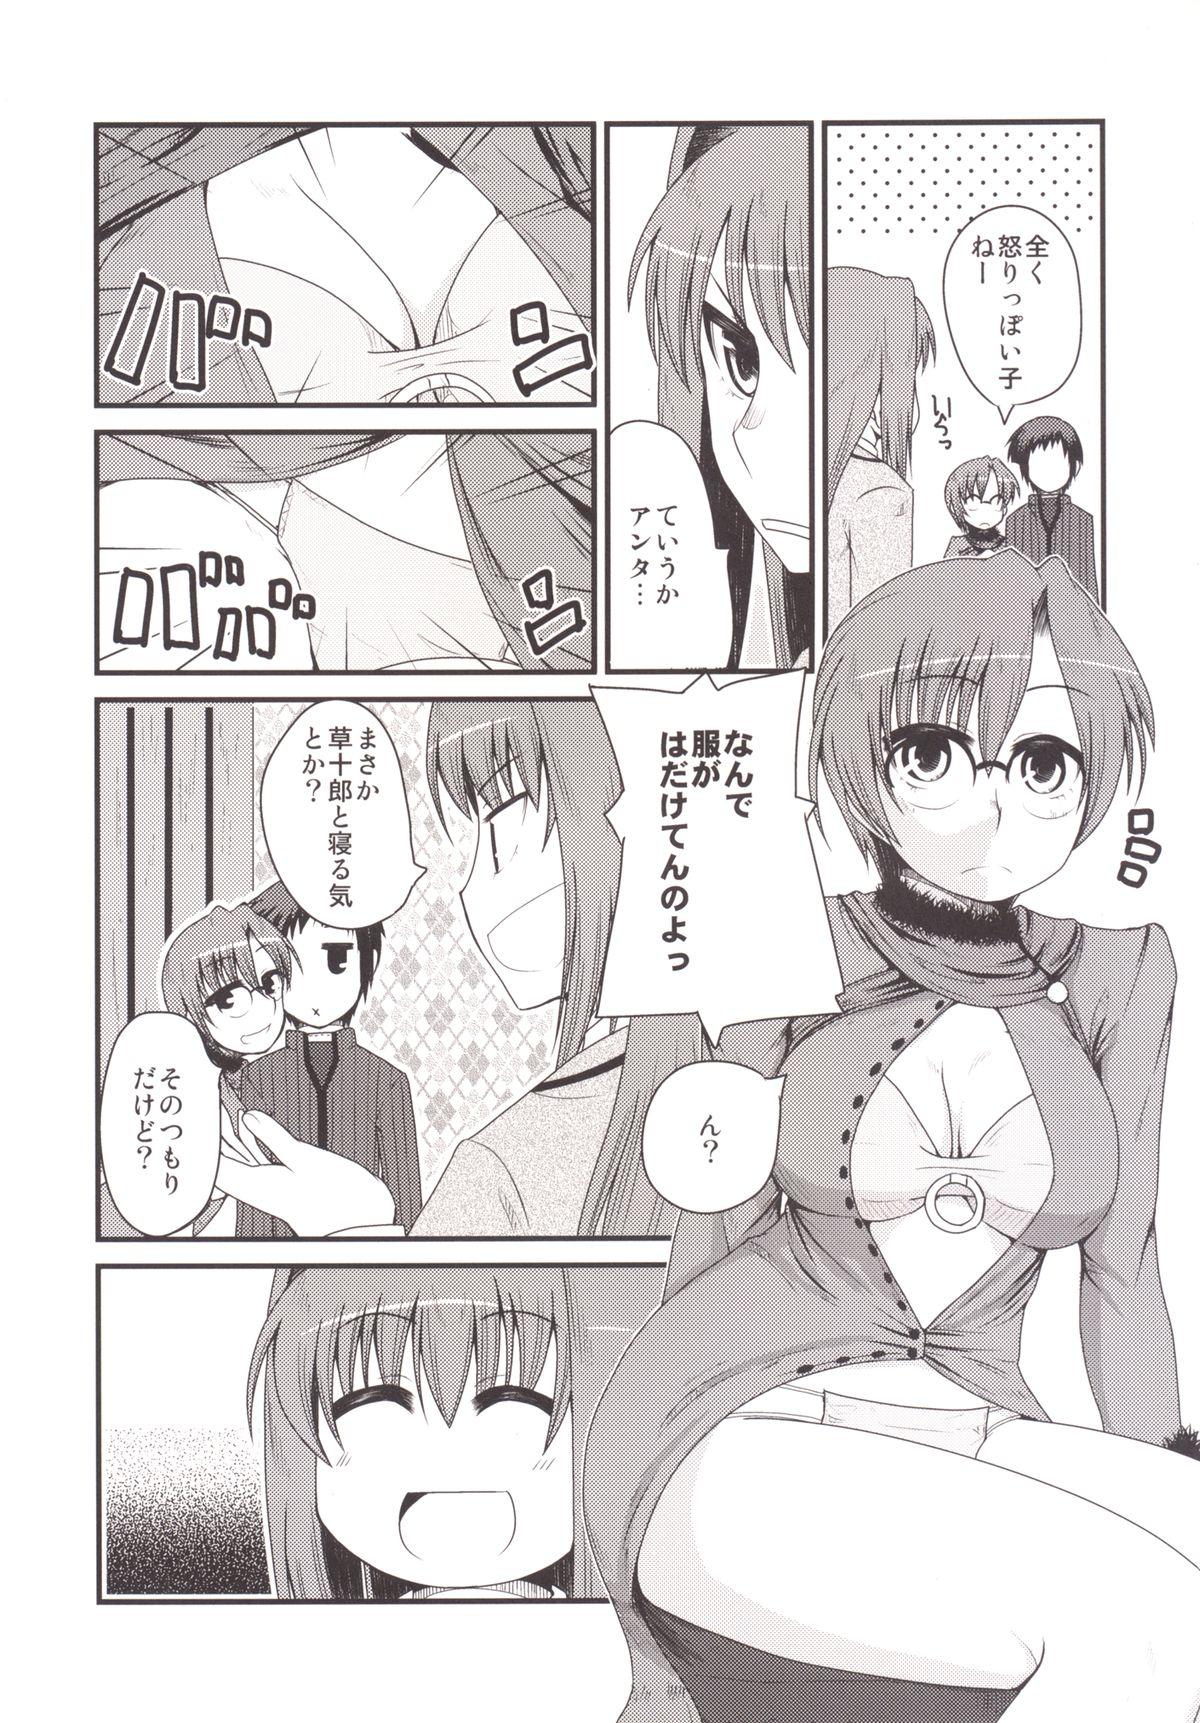 White Girl Ittsu Main 2 - Mahou tsukai no yoru Adult - Page 6